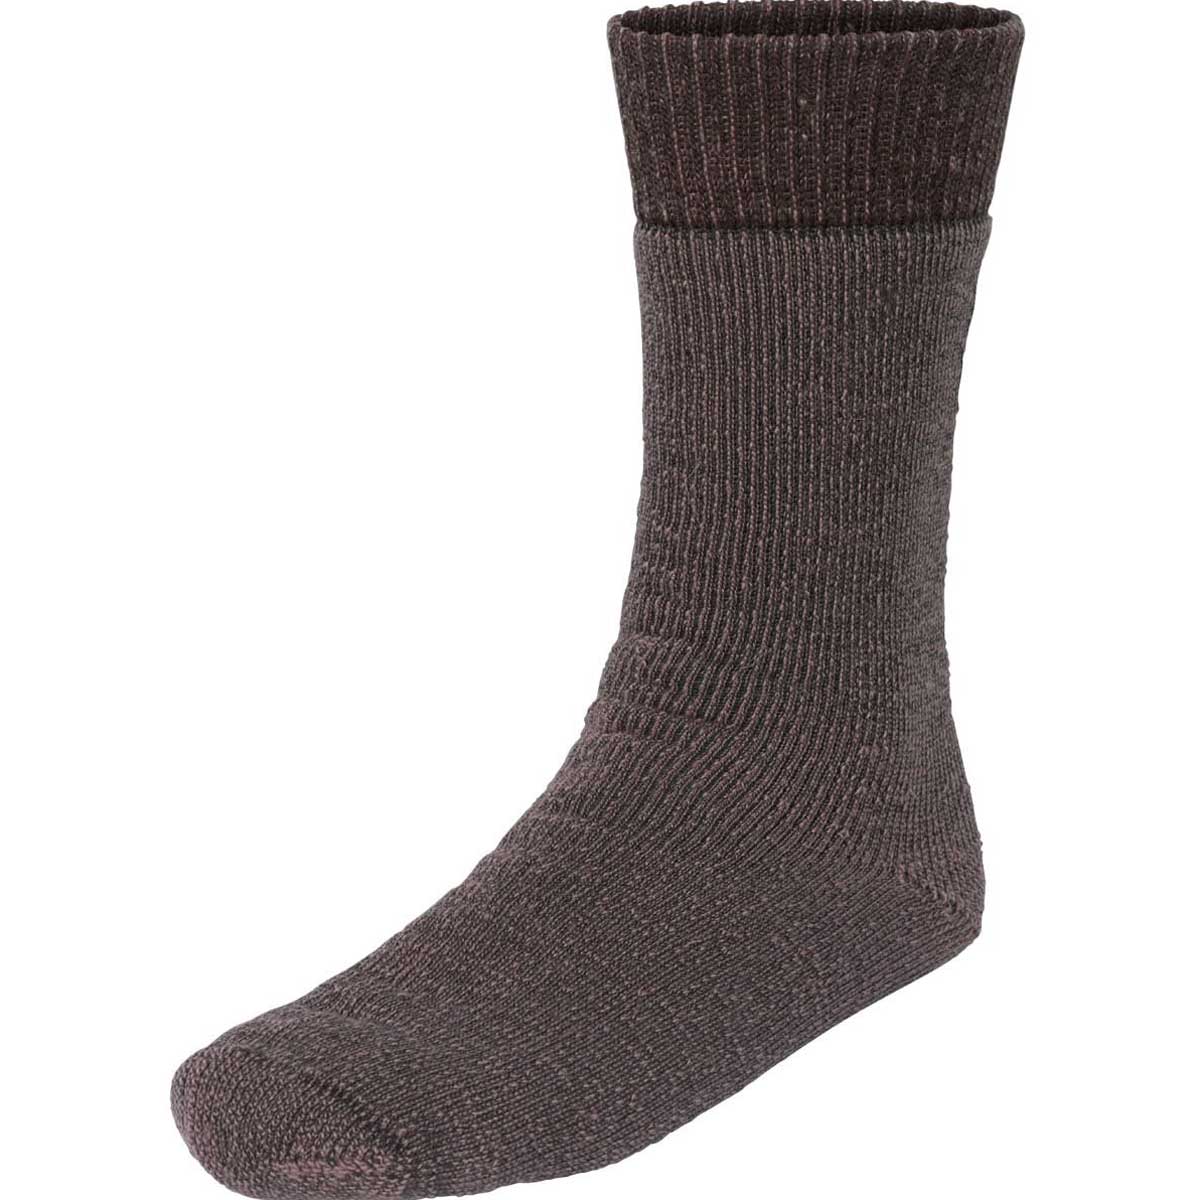 SEELAND Climate Socks - Wool Blend- Brown